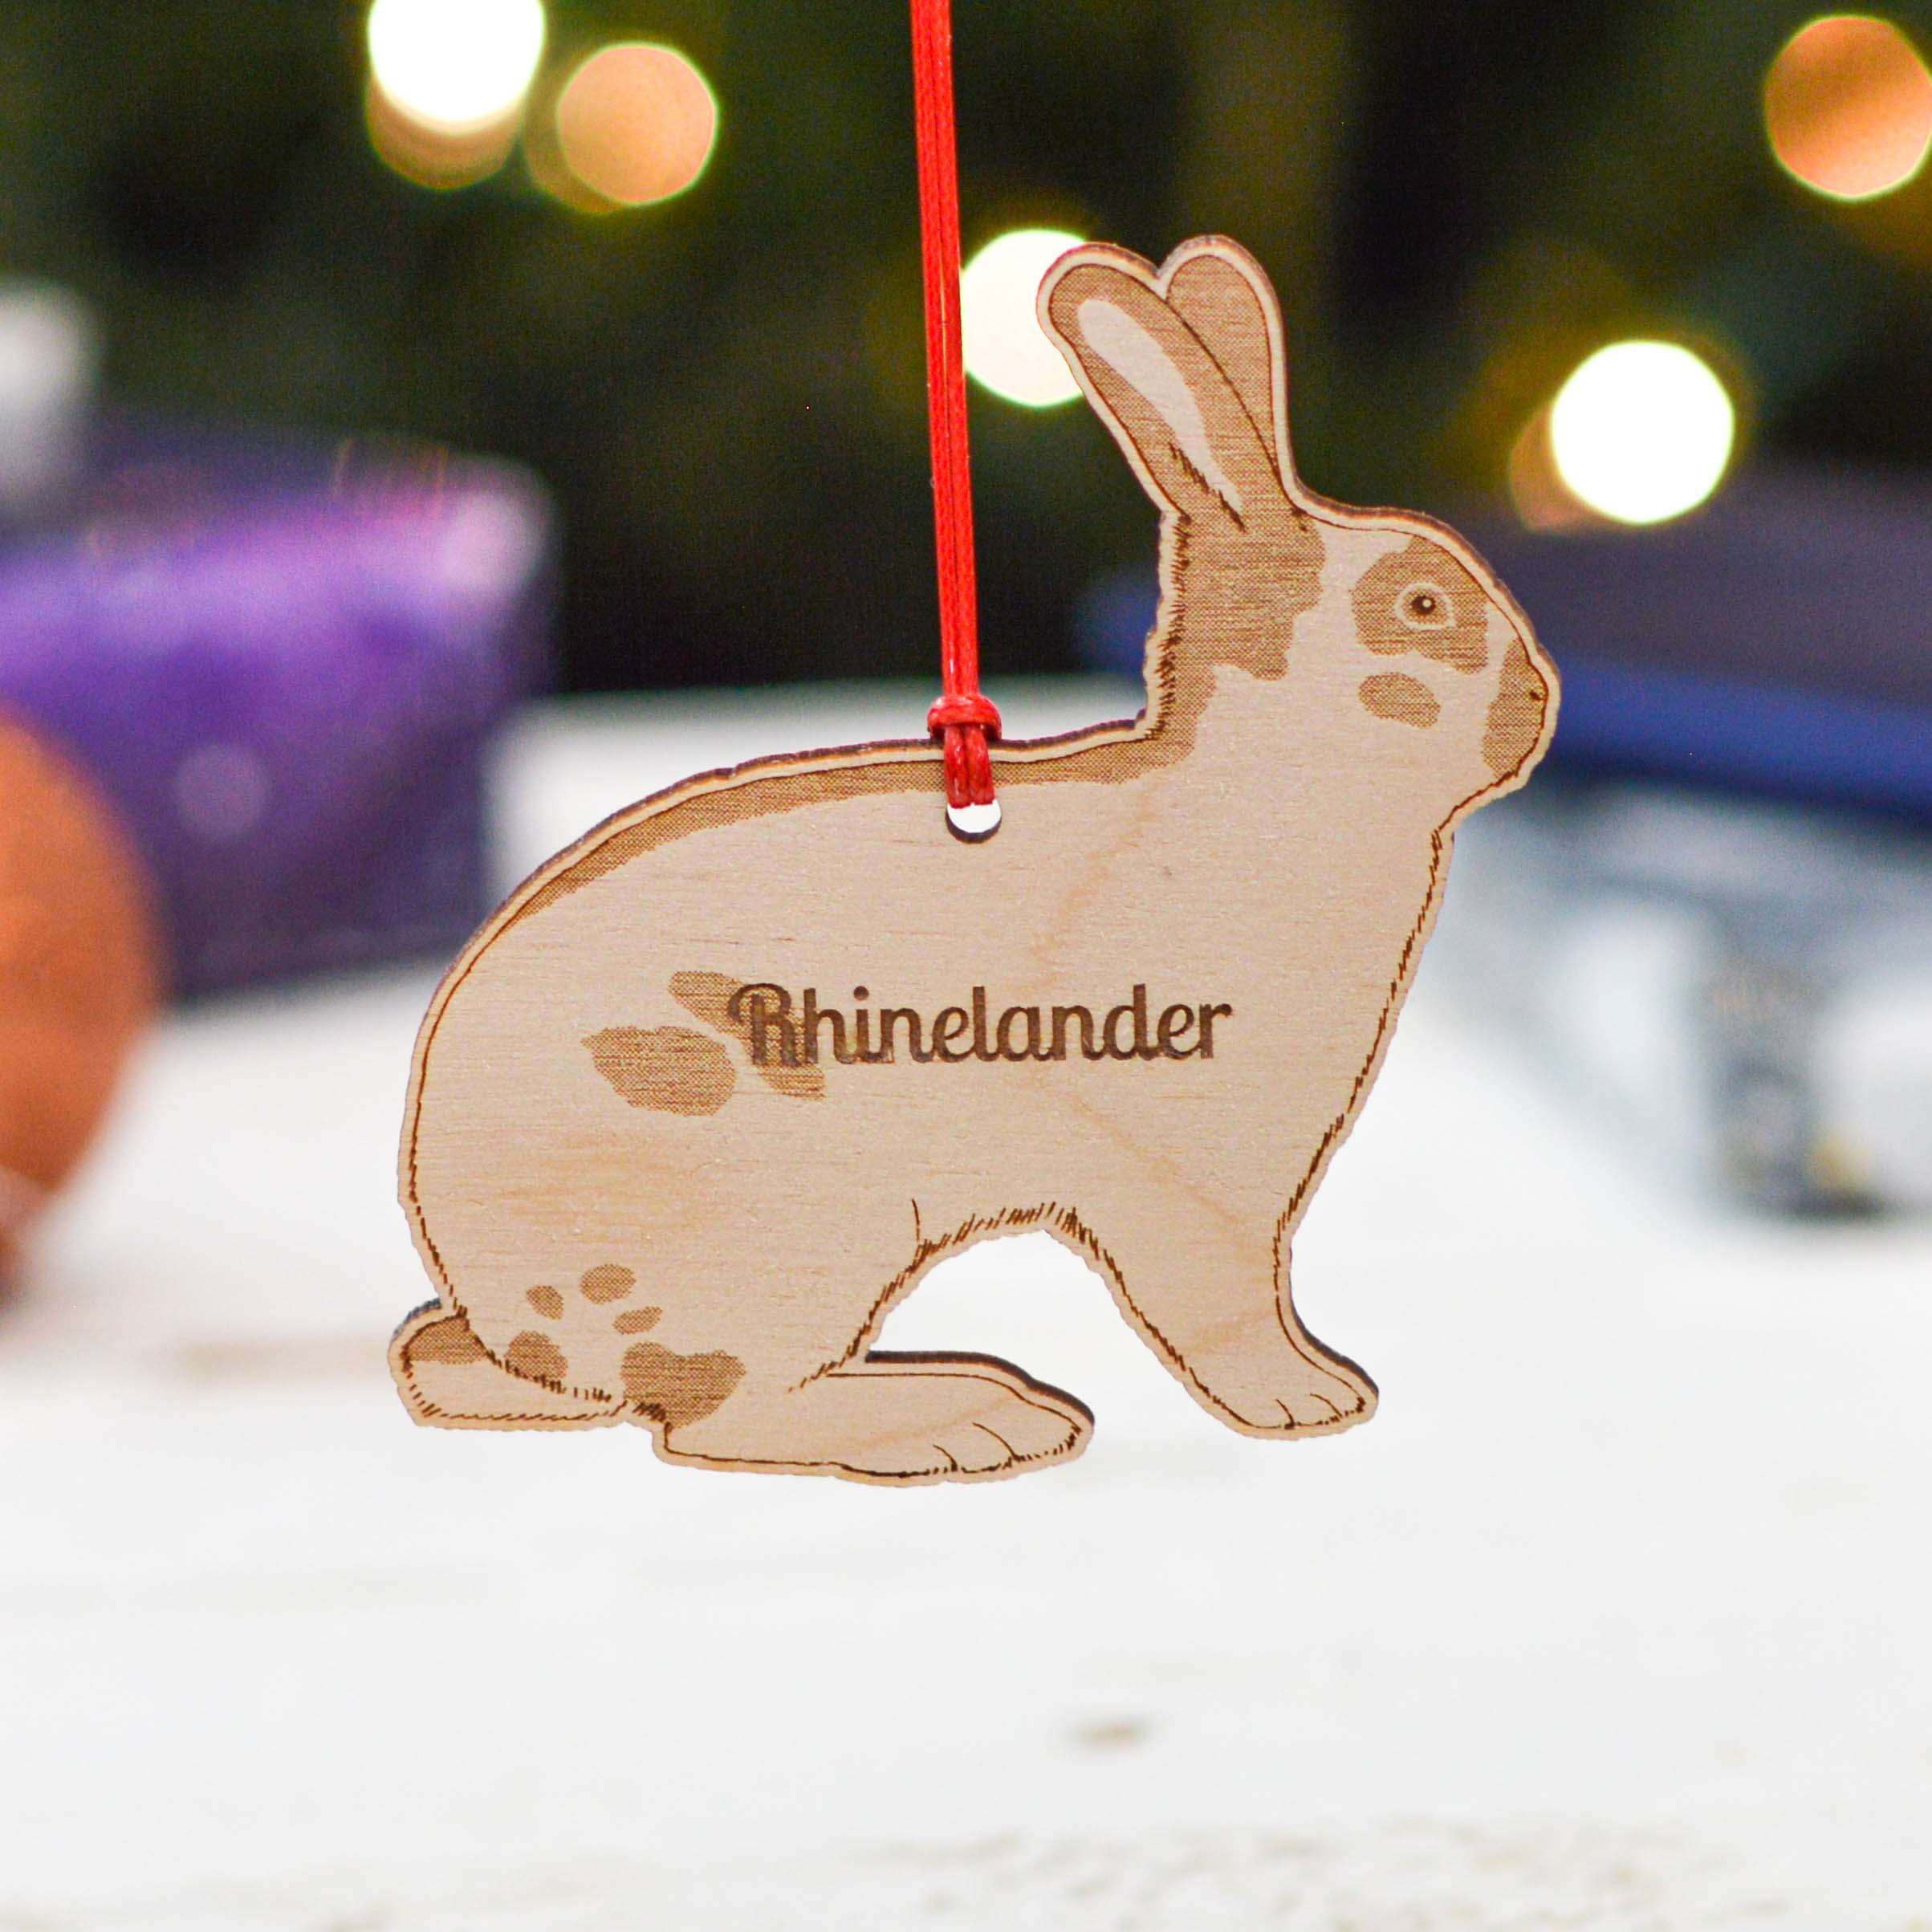 Personalised Rhinelander Rabbit Decoration